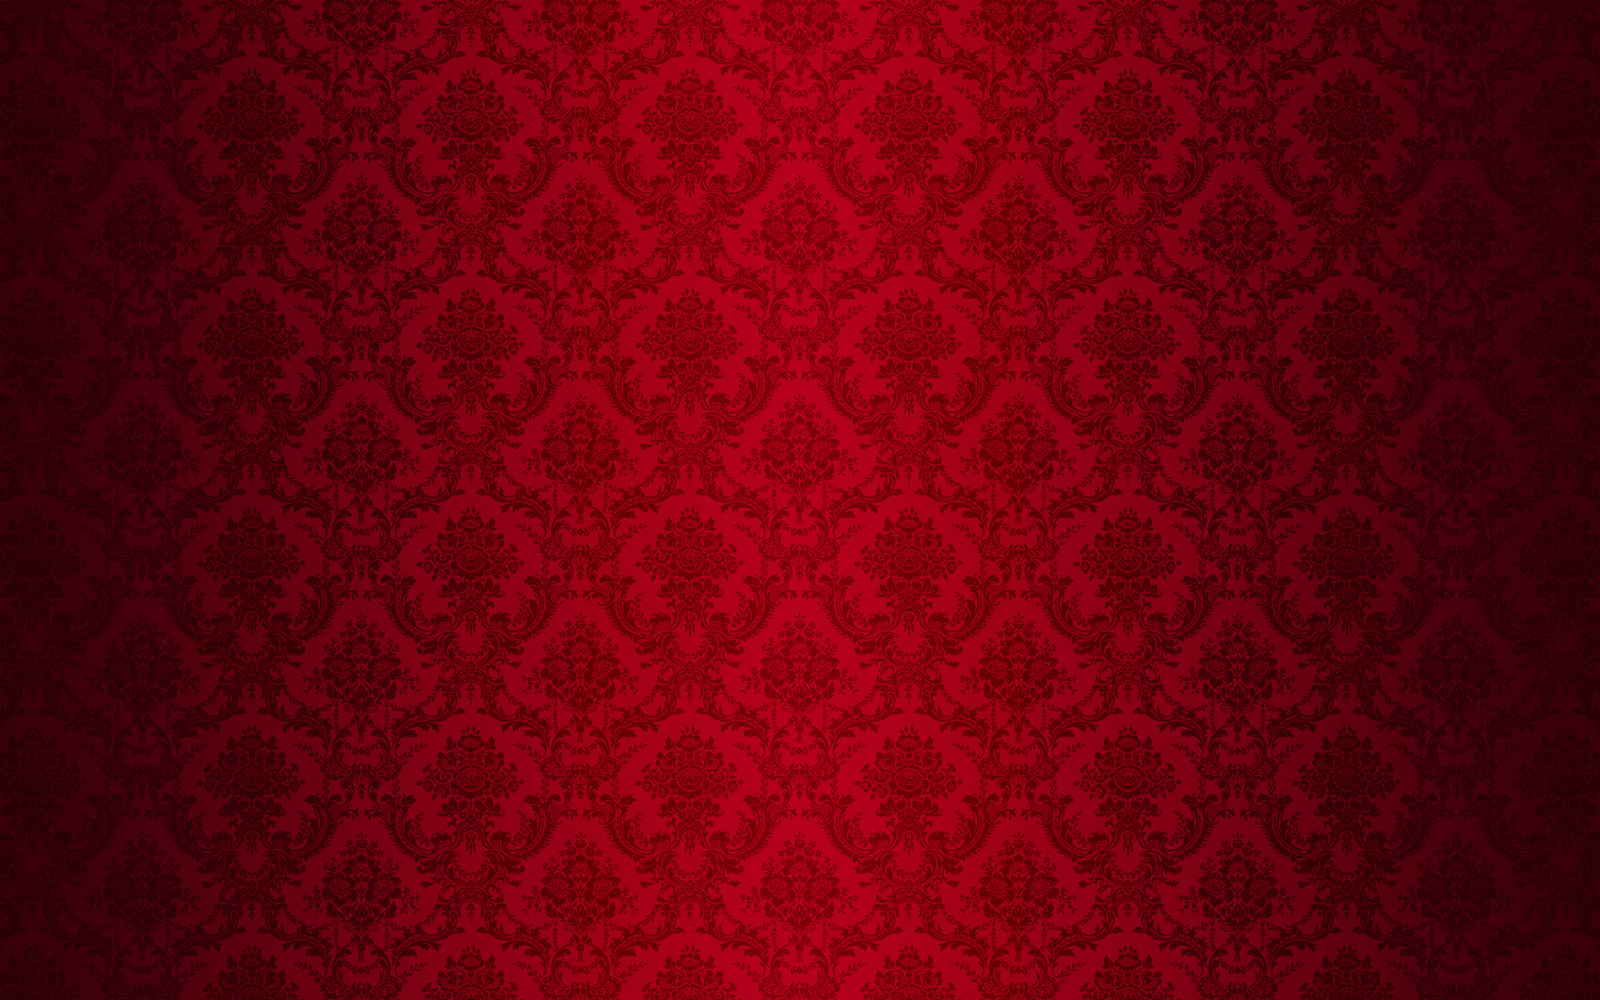 Hình nền đỏ vintage hoa văn đàm xước sẽ làm cho chiếc máy tính của bạn trở nên thật phong cách. Bạn sẽ yêu thích những chi tiết hoa văn mềm mại trên nền đỏ tươi này.